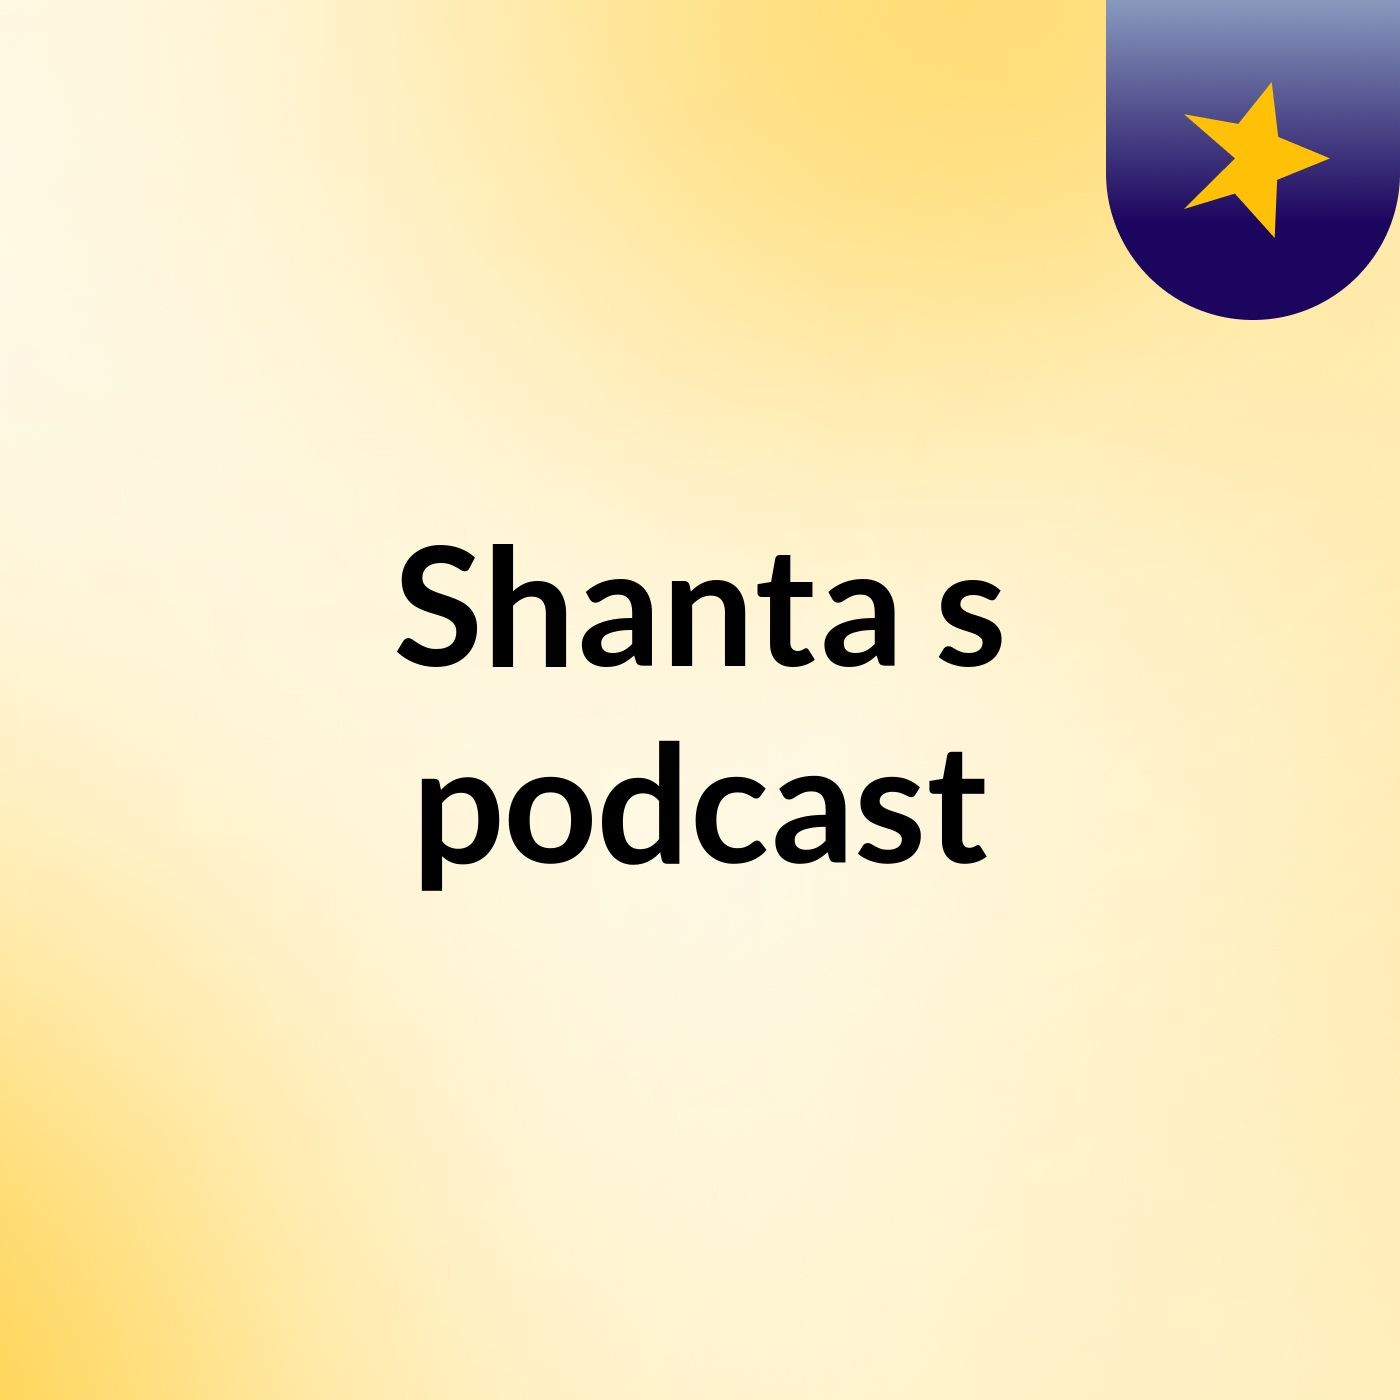 Shanta's podcast